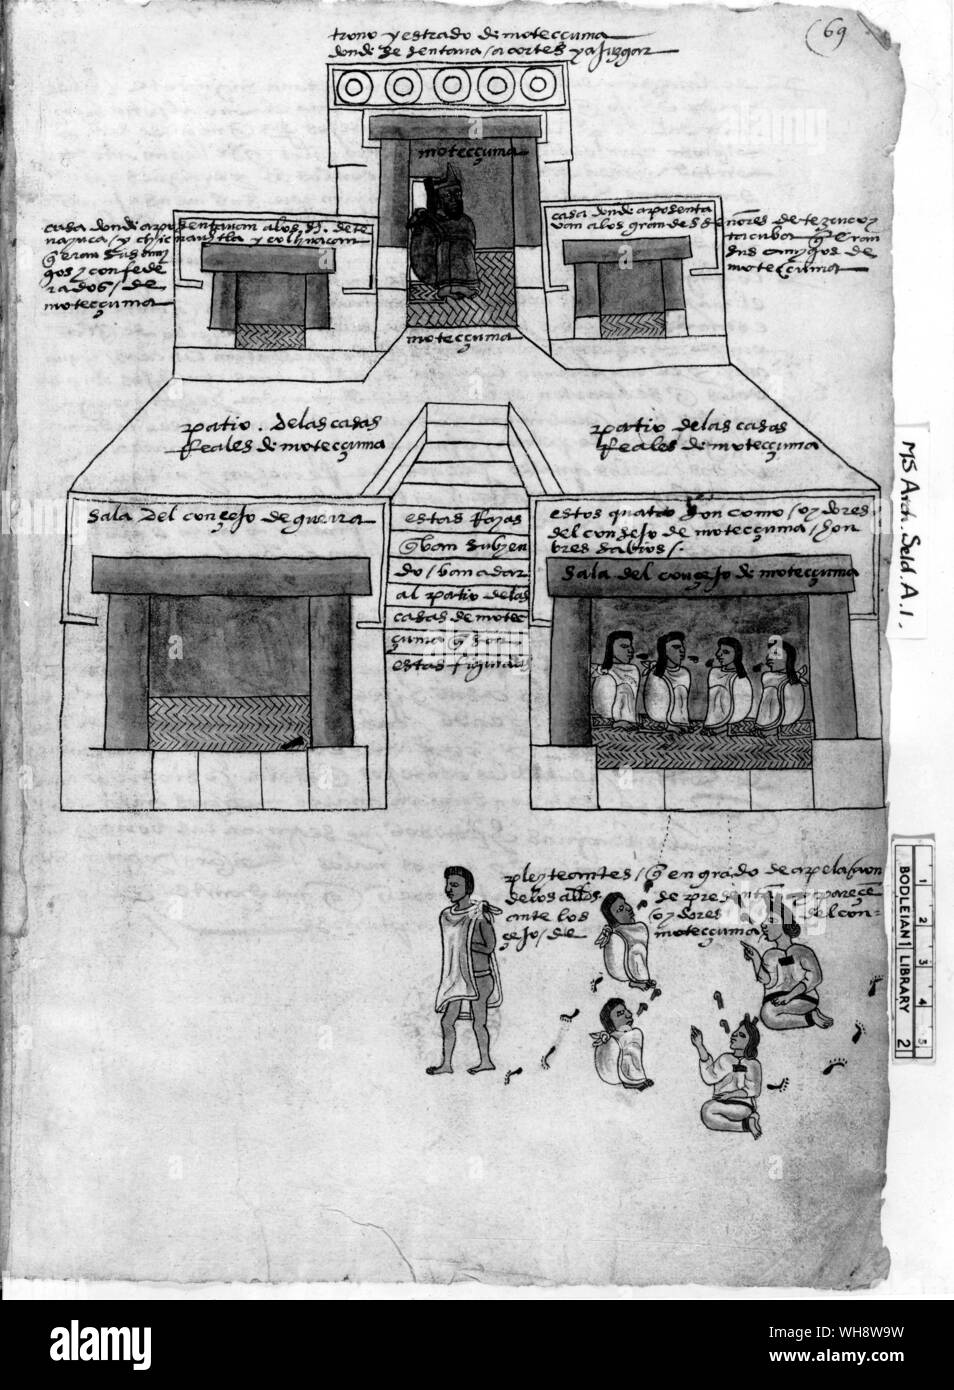 Moctezuma's Palast diente auch als ein Gericht, hier in der Sitzung gesehen. Codex Stockfoto